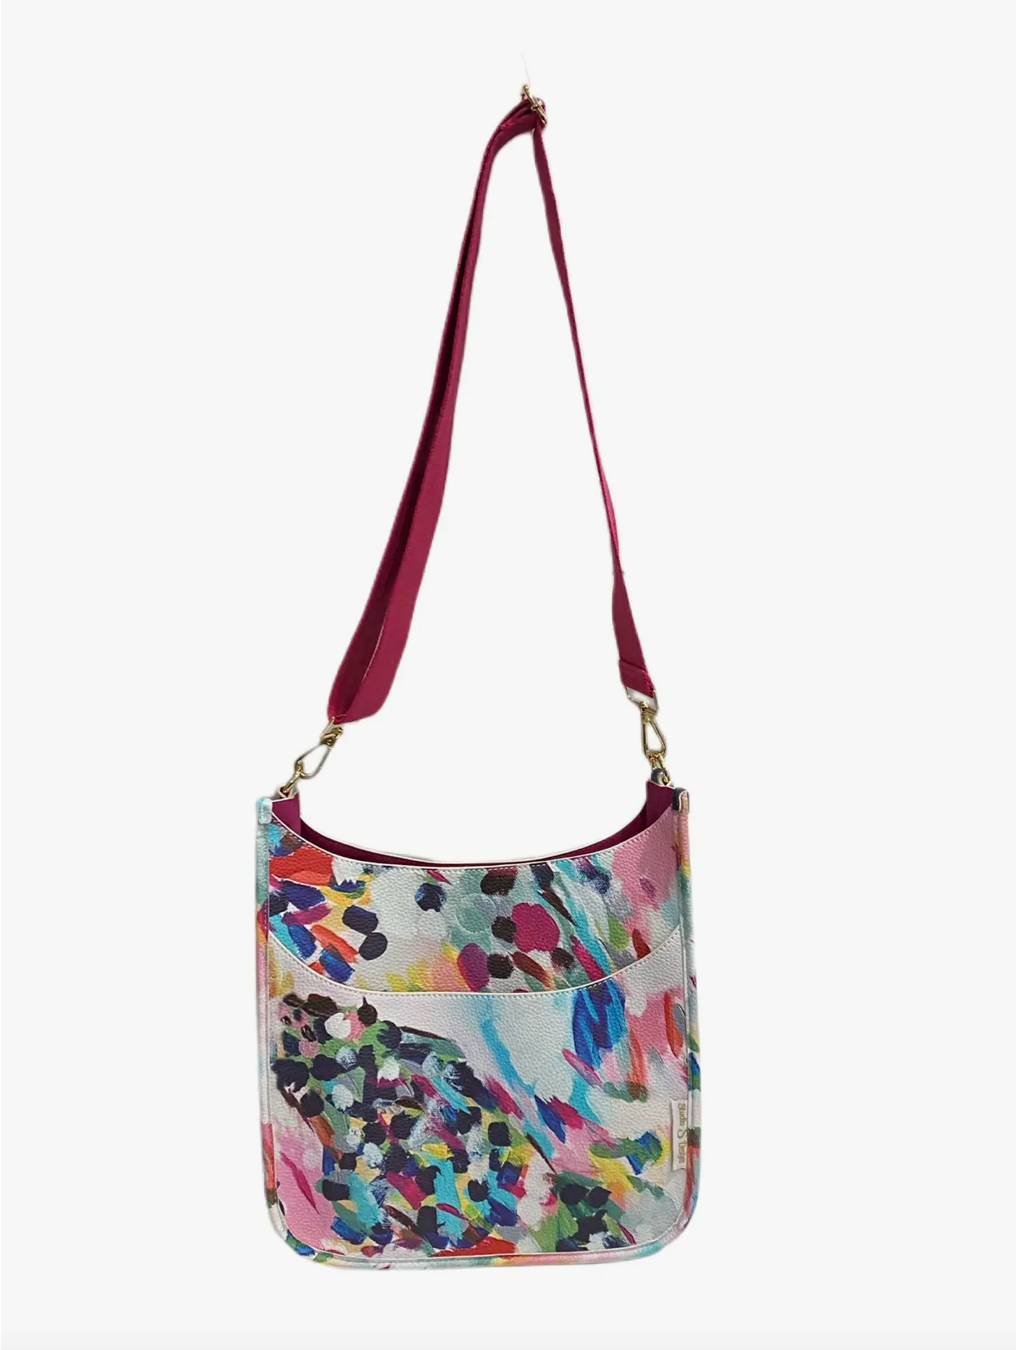 Studio S Designs Watercolor Crossbody Bag - Hope